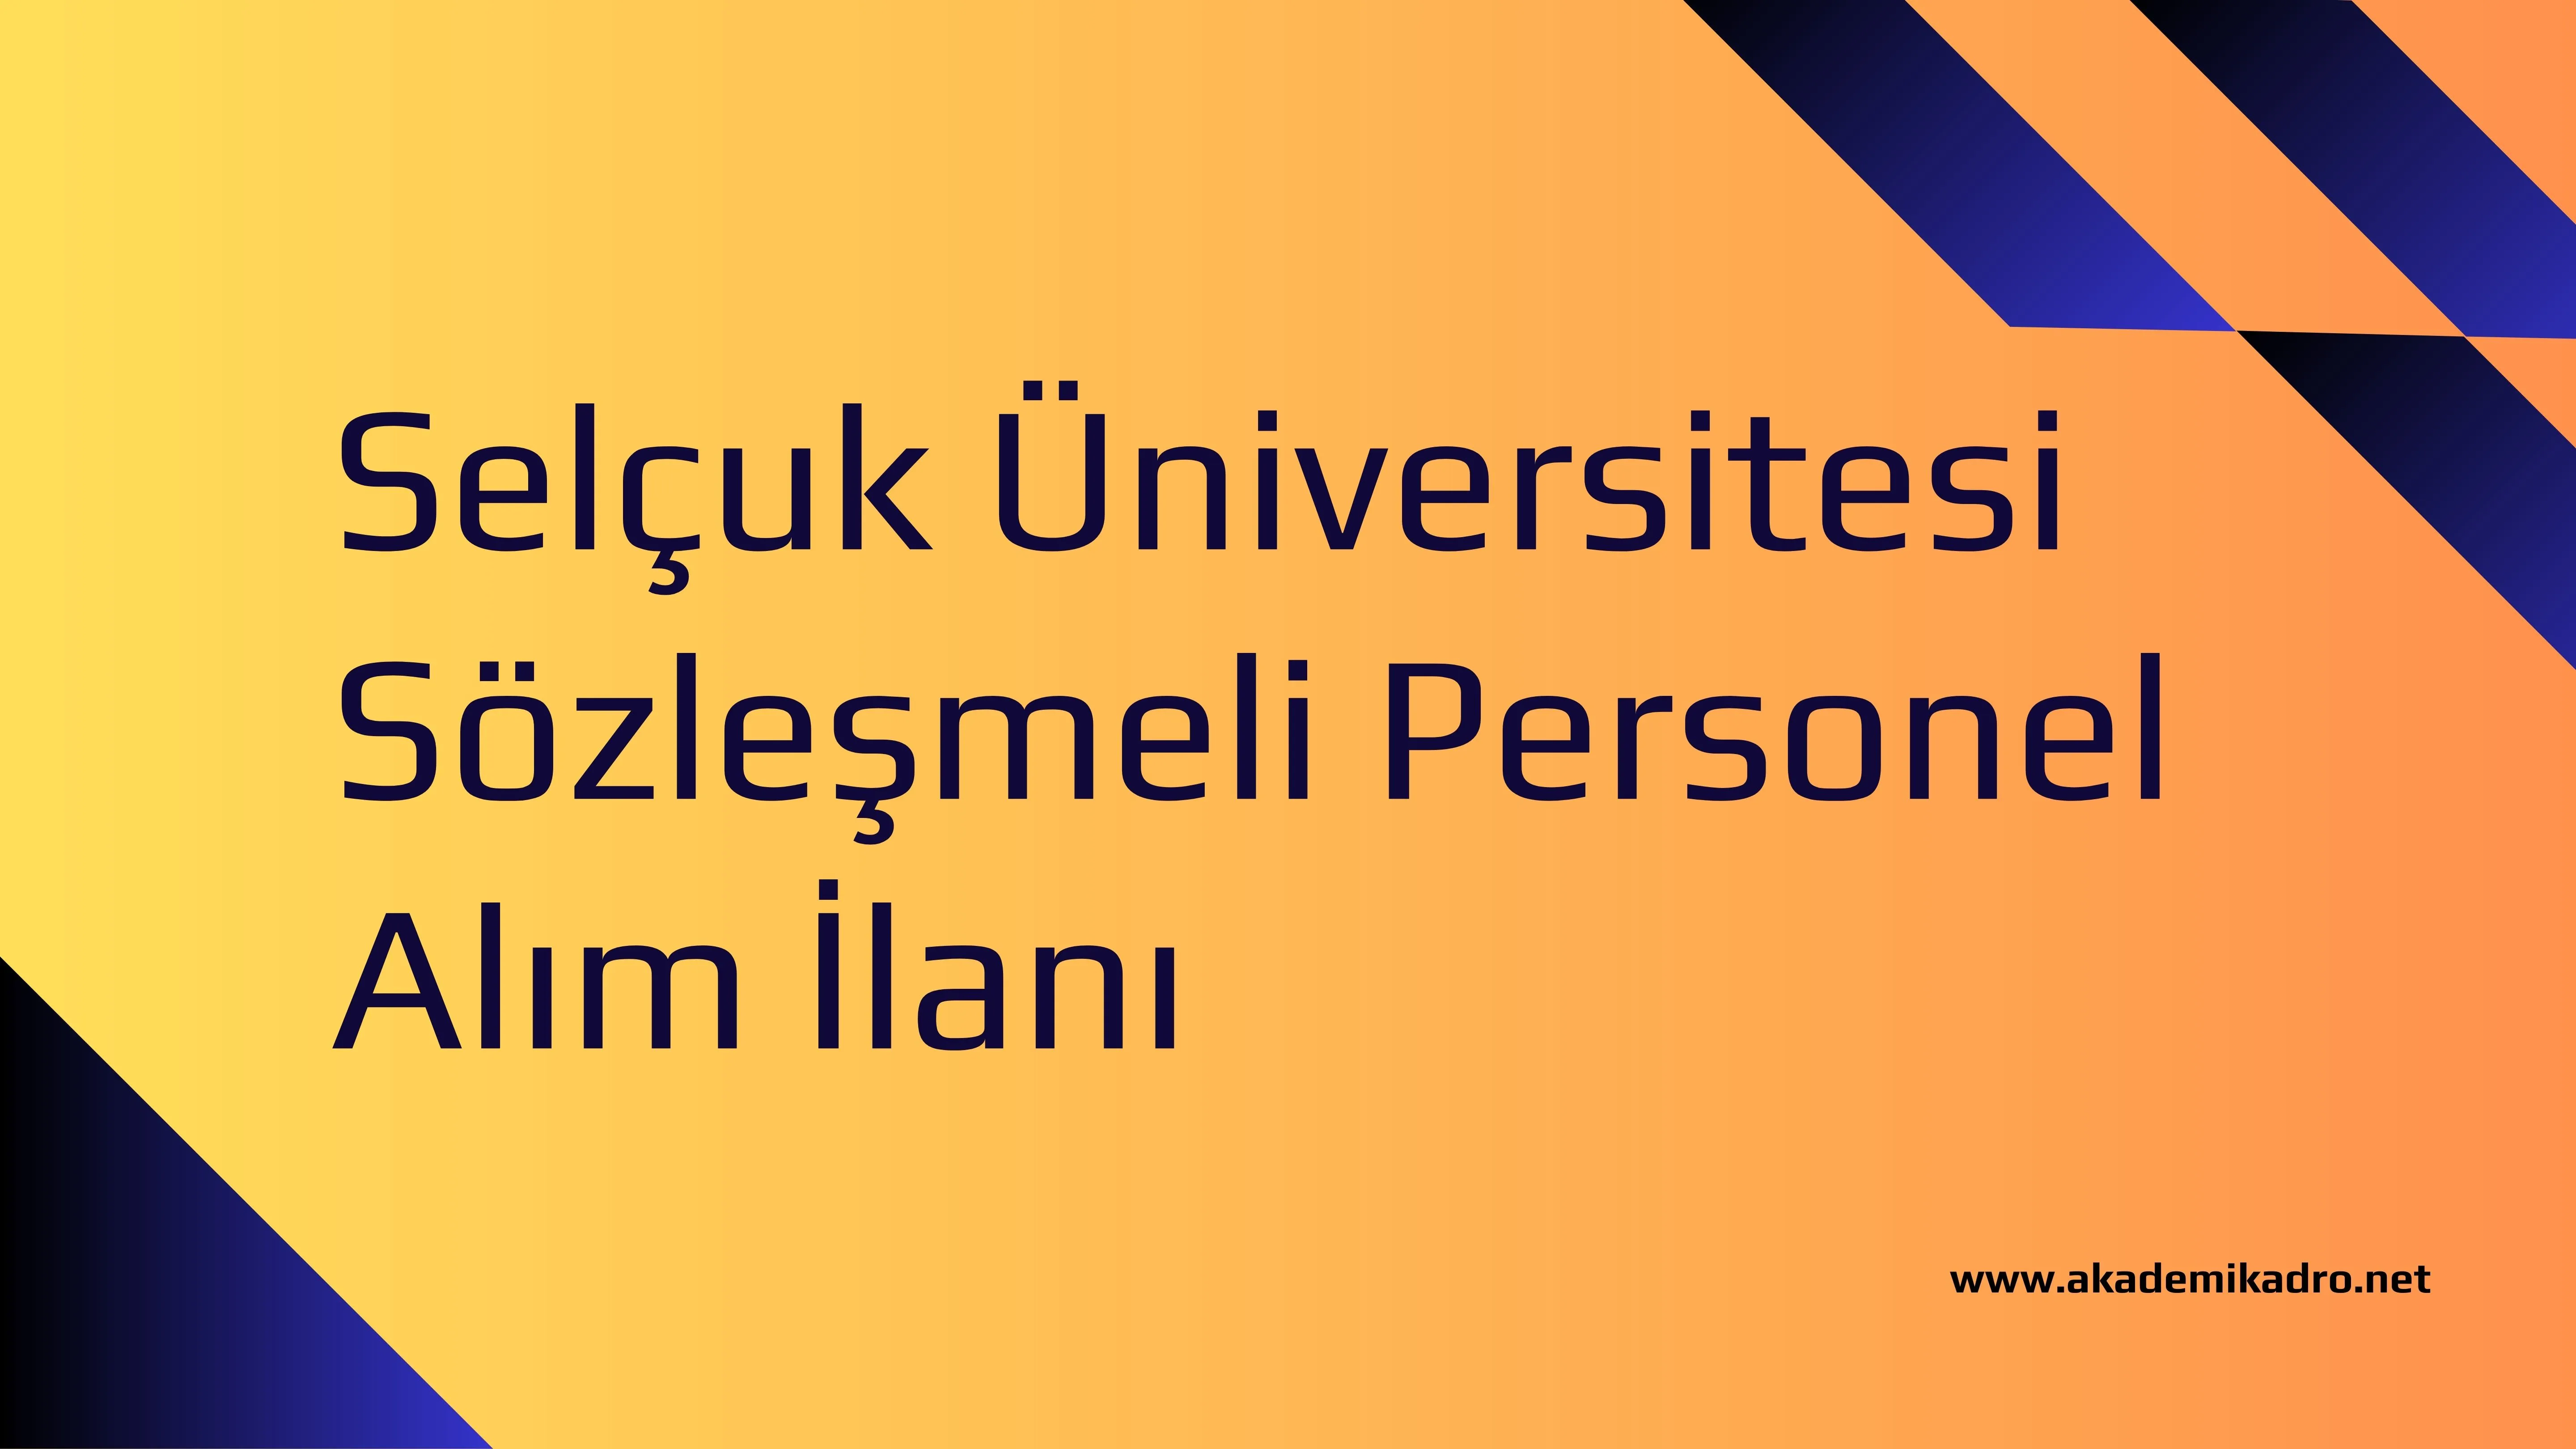 Selçuk Üniversitesi 18 sözleşmeli personel alacak